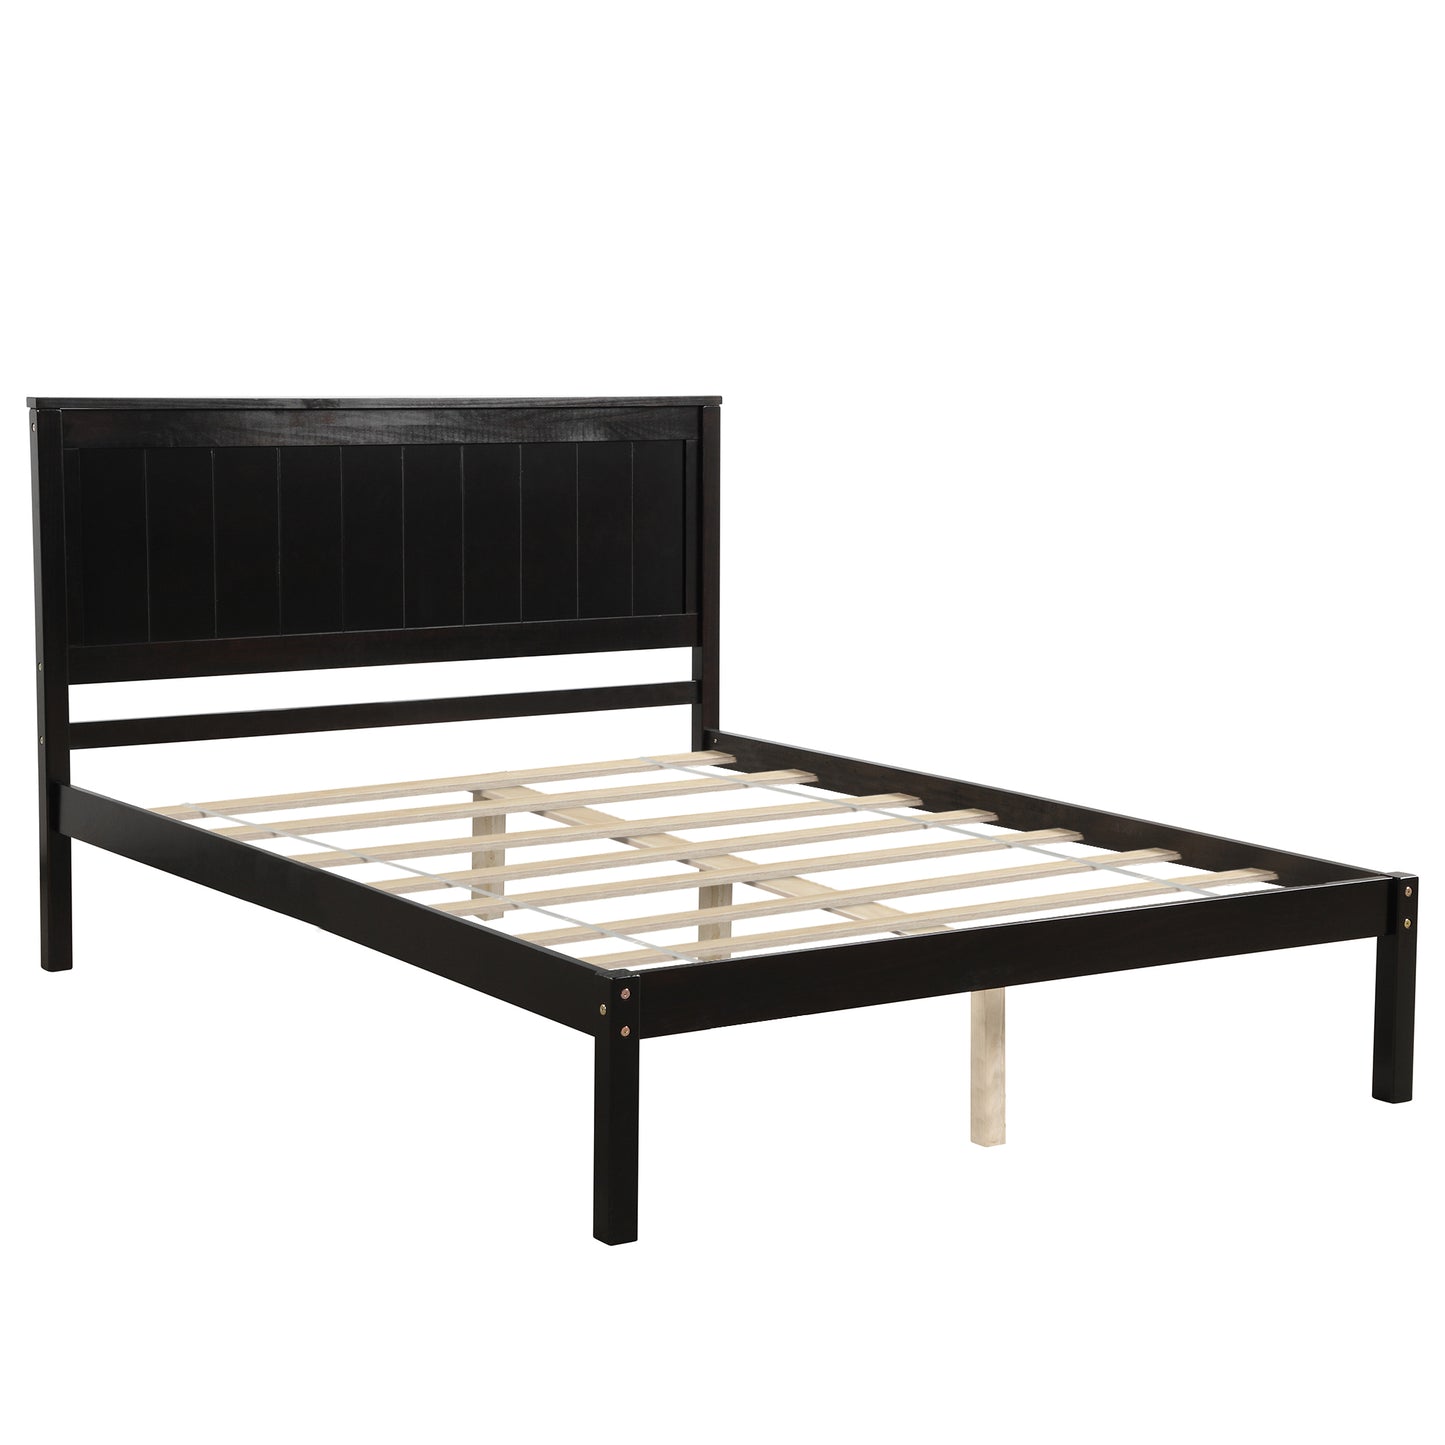 Full Platform Bed Frame, Solid Wood Bed Frame with Headboard, Full Bed Frame for Kids Adults, Full-Size Bed Frame for Bedroom, Espresso, LJ2434